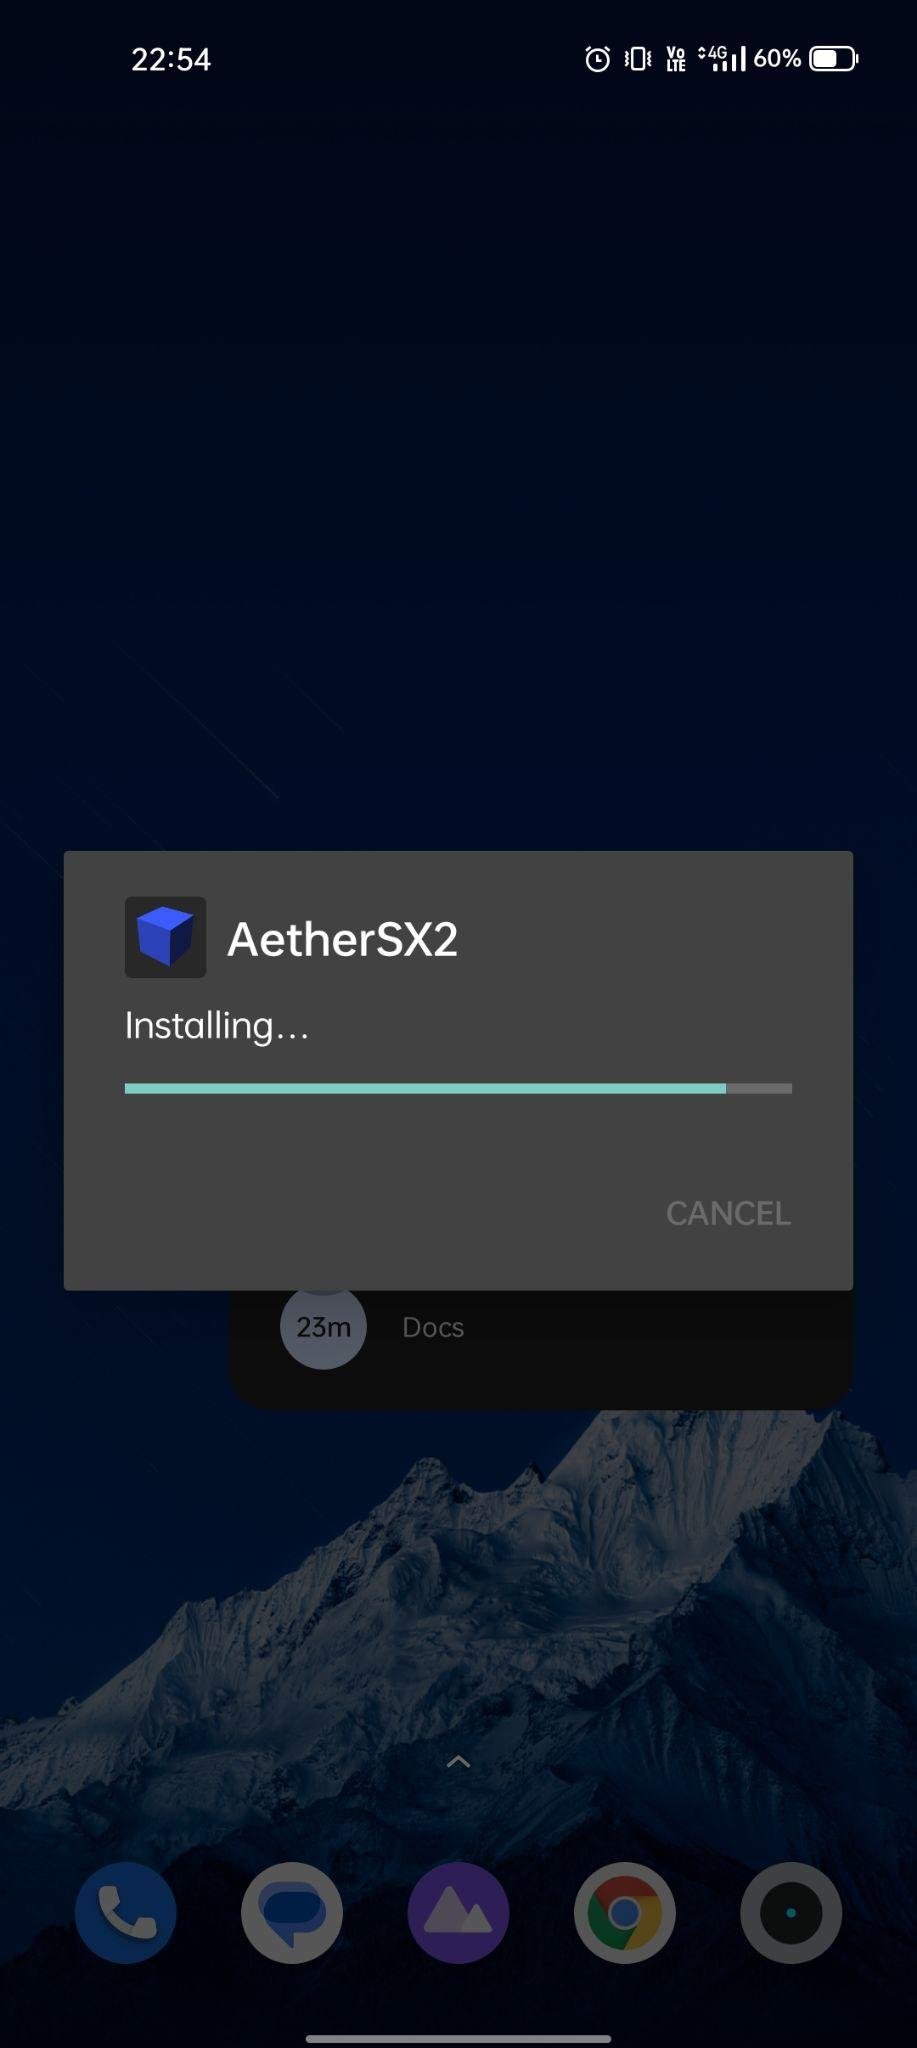 AetherSX2 apk instalando